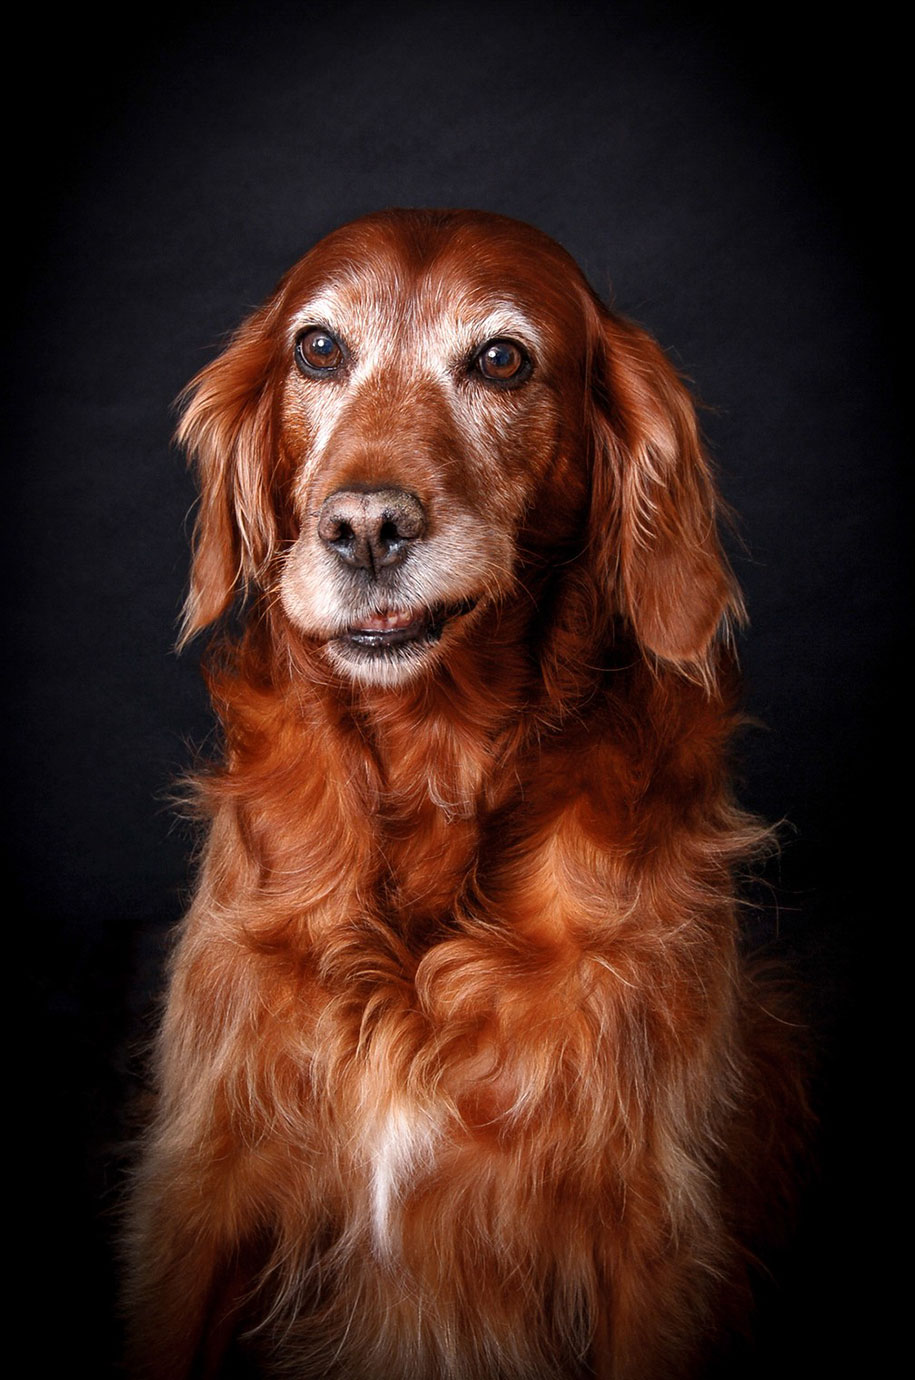 kennel club dog photographer competition 2017 15 - Ganhadores do concurso fotografias de cachorrinhos